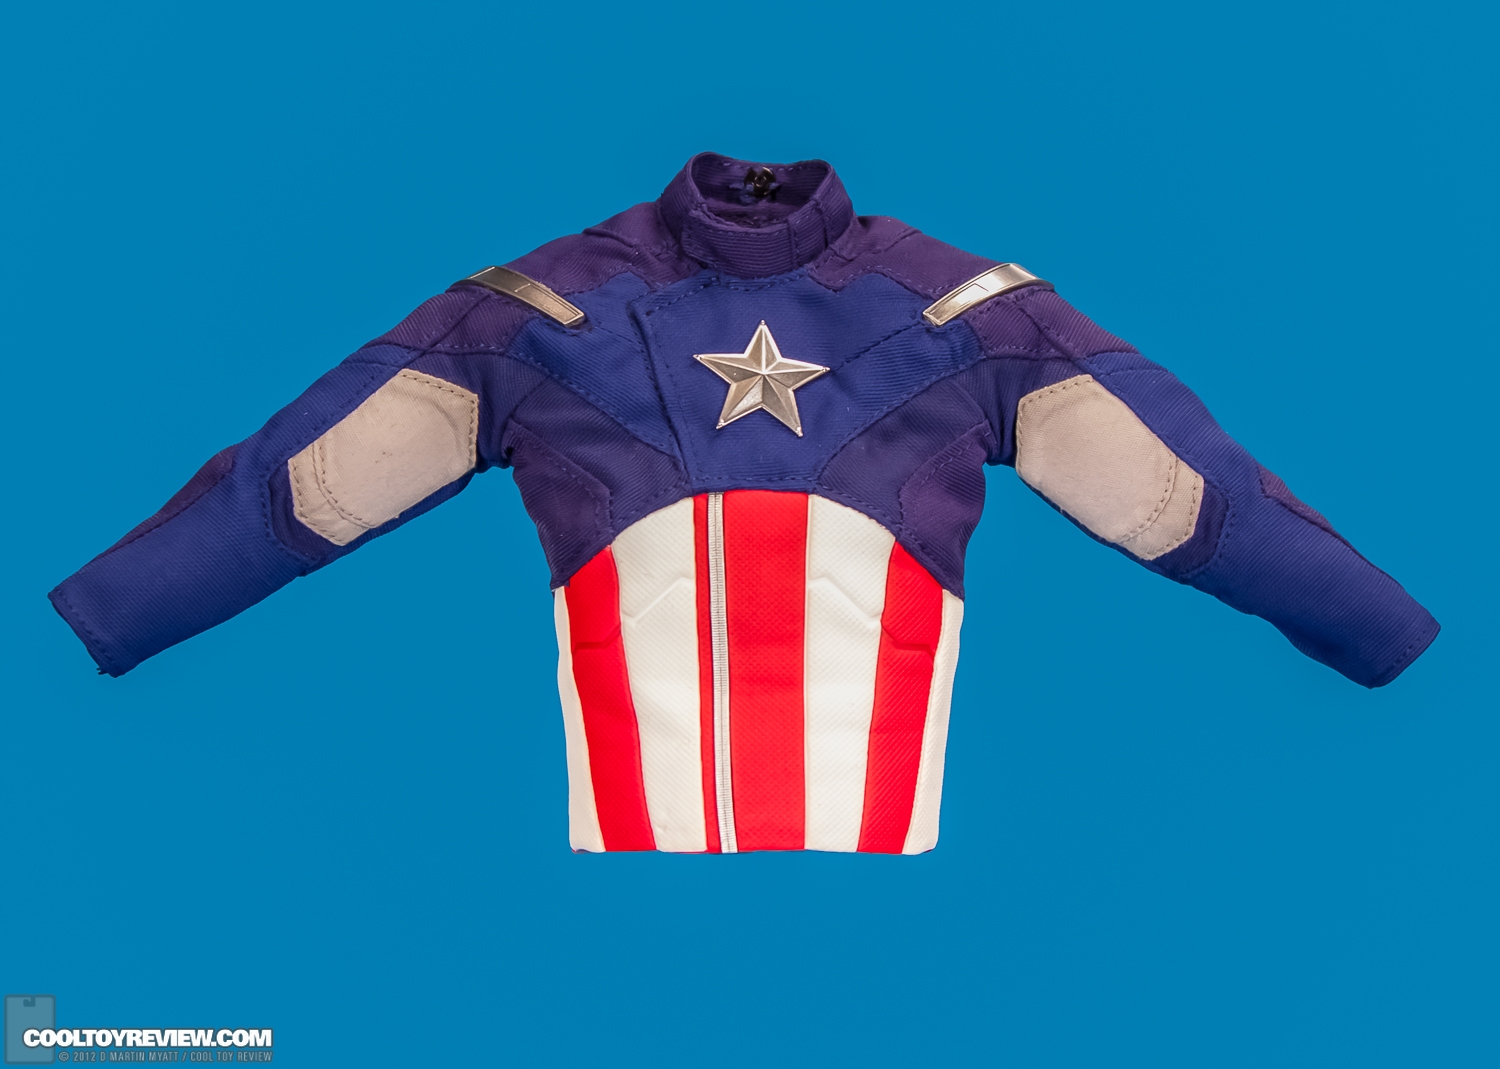 Captain_America_Avengers_Hot_Toys-17.jpg